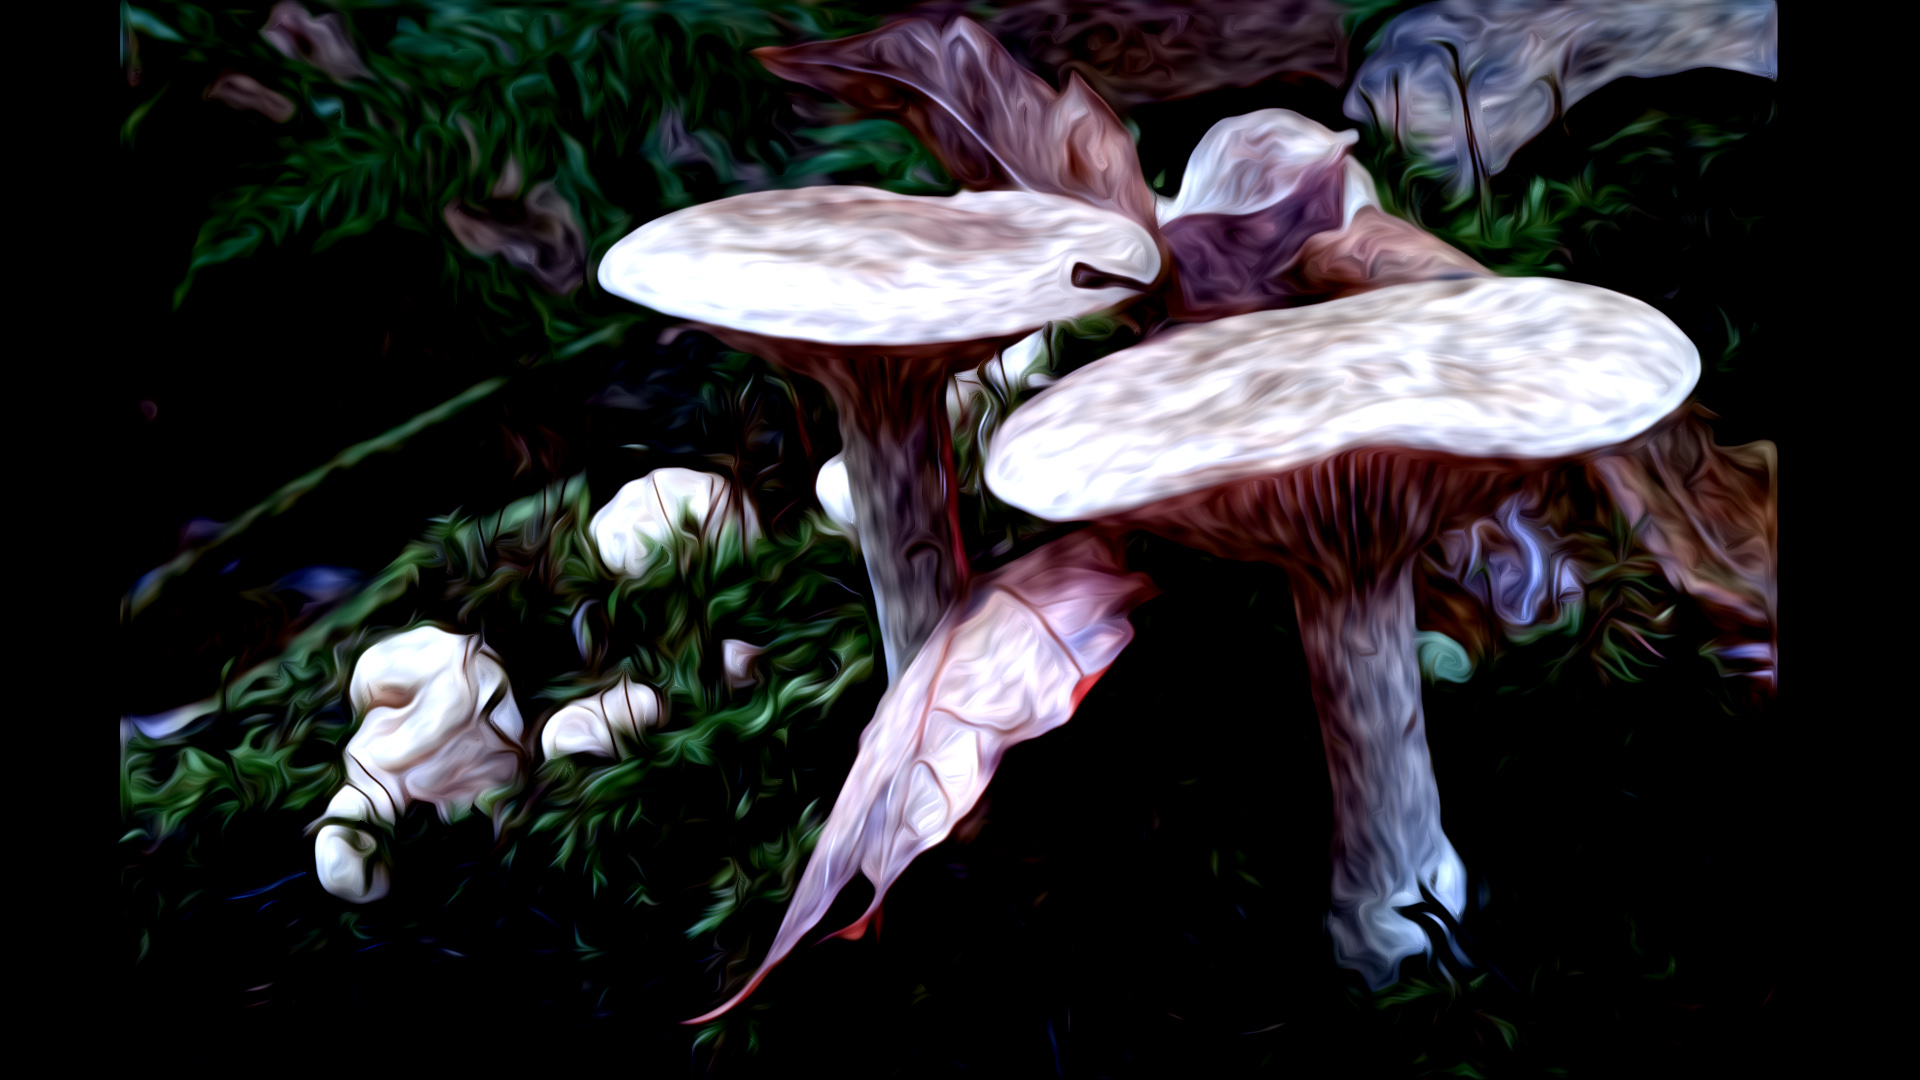 two mushrooms.jpg